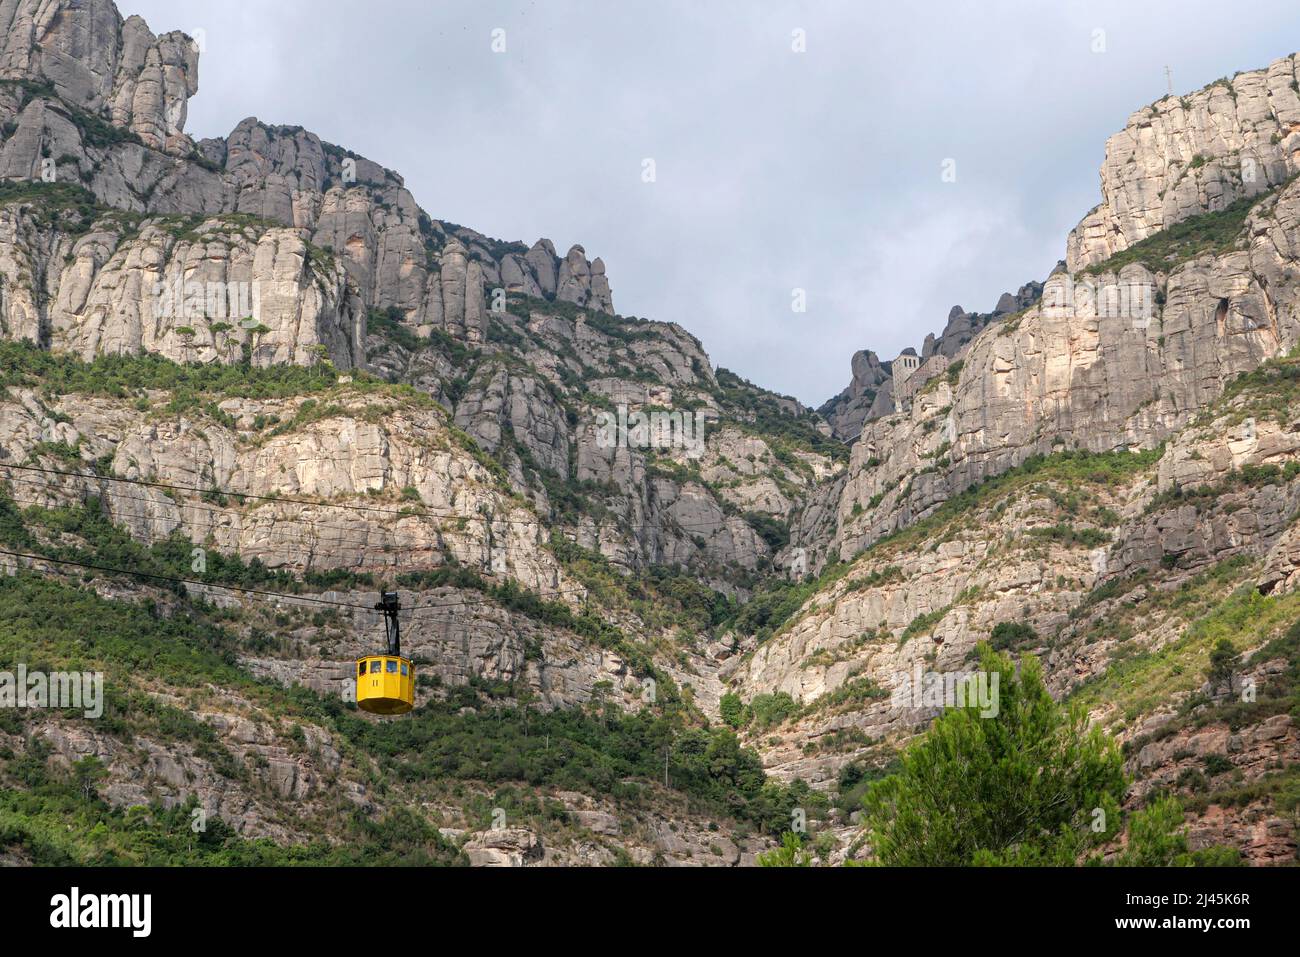 España, Cataluña, Monistrol de Montserrat: Inaugurado en 1930, el teleférico amarillo de la Aeri de Montserrat es uno de los medios de acceso al Mon Foto de stock